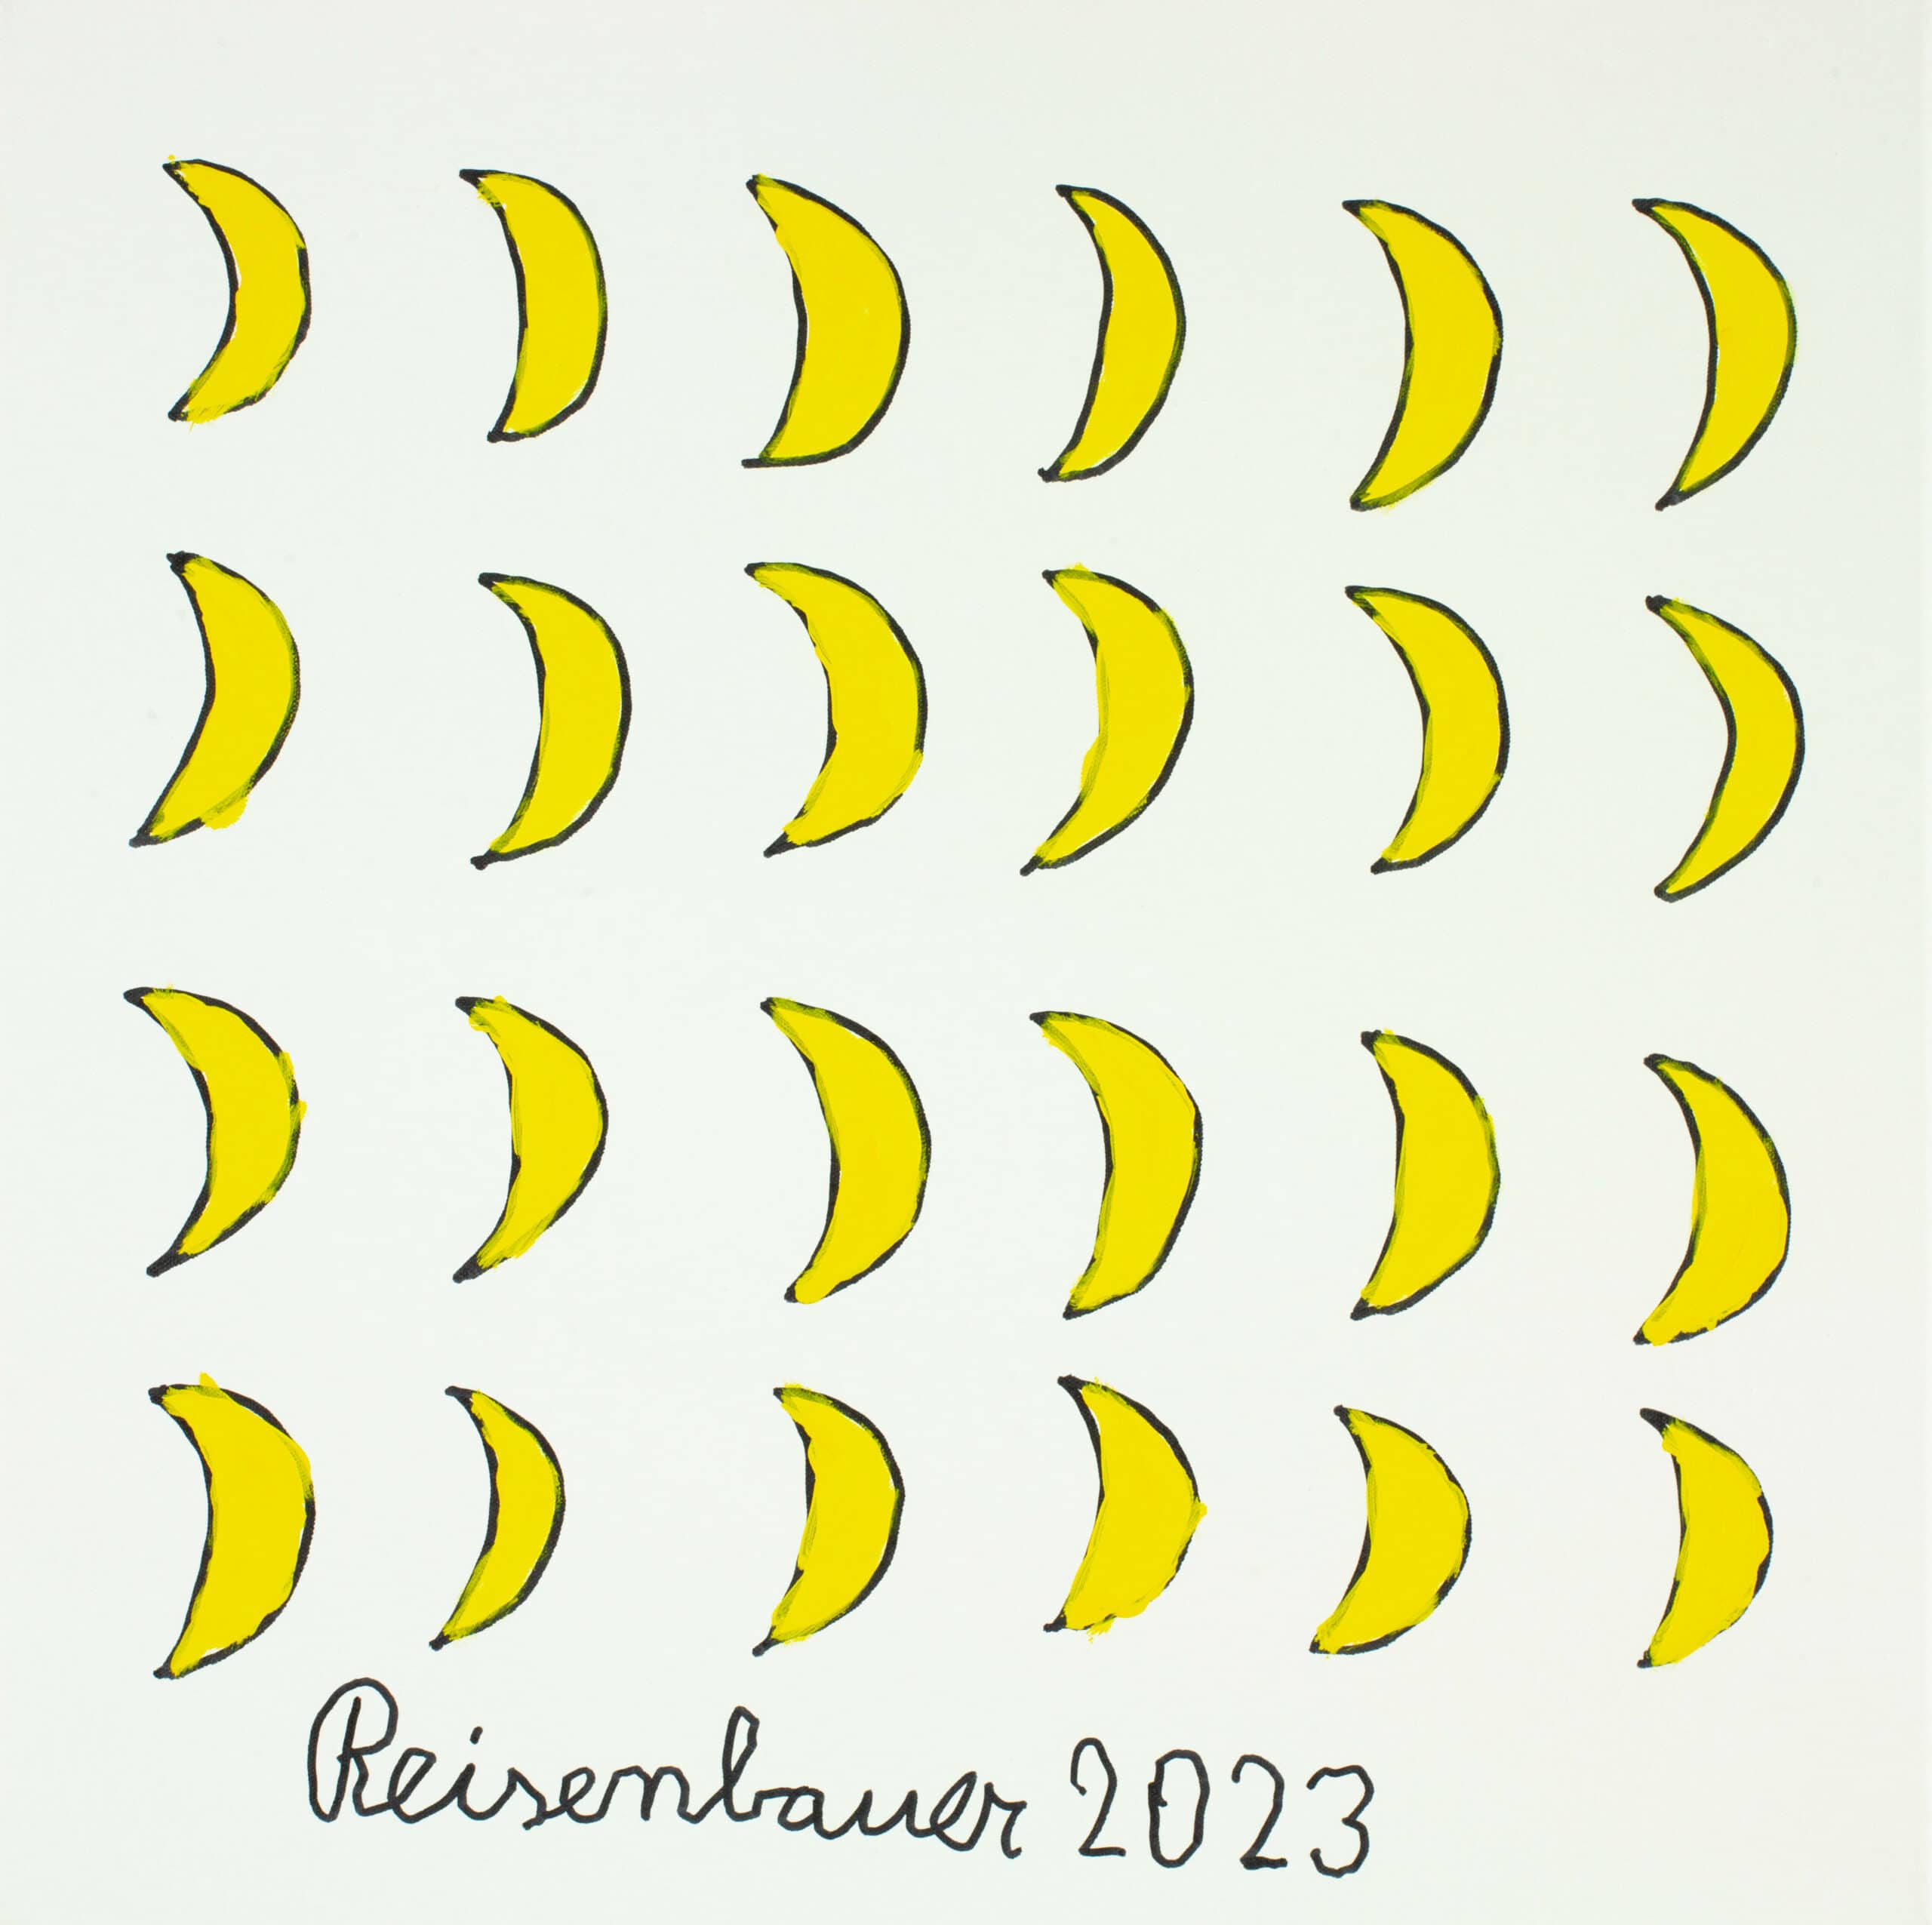 reisenbauer heinrich - Sichelmonde / Crescent moons